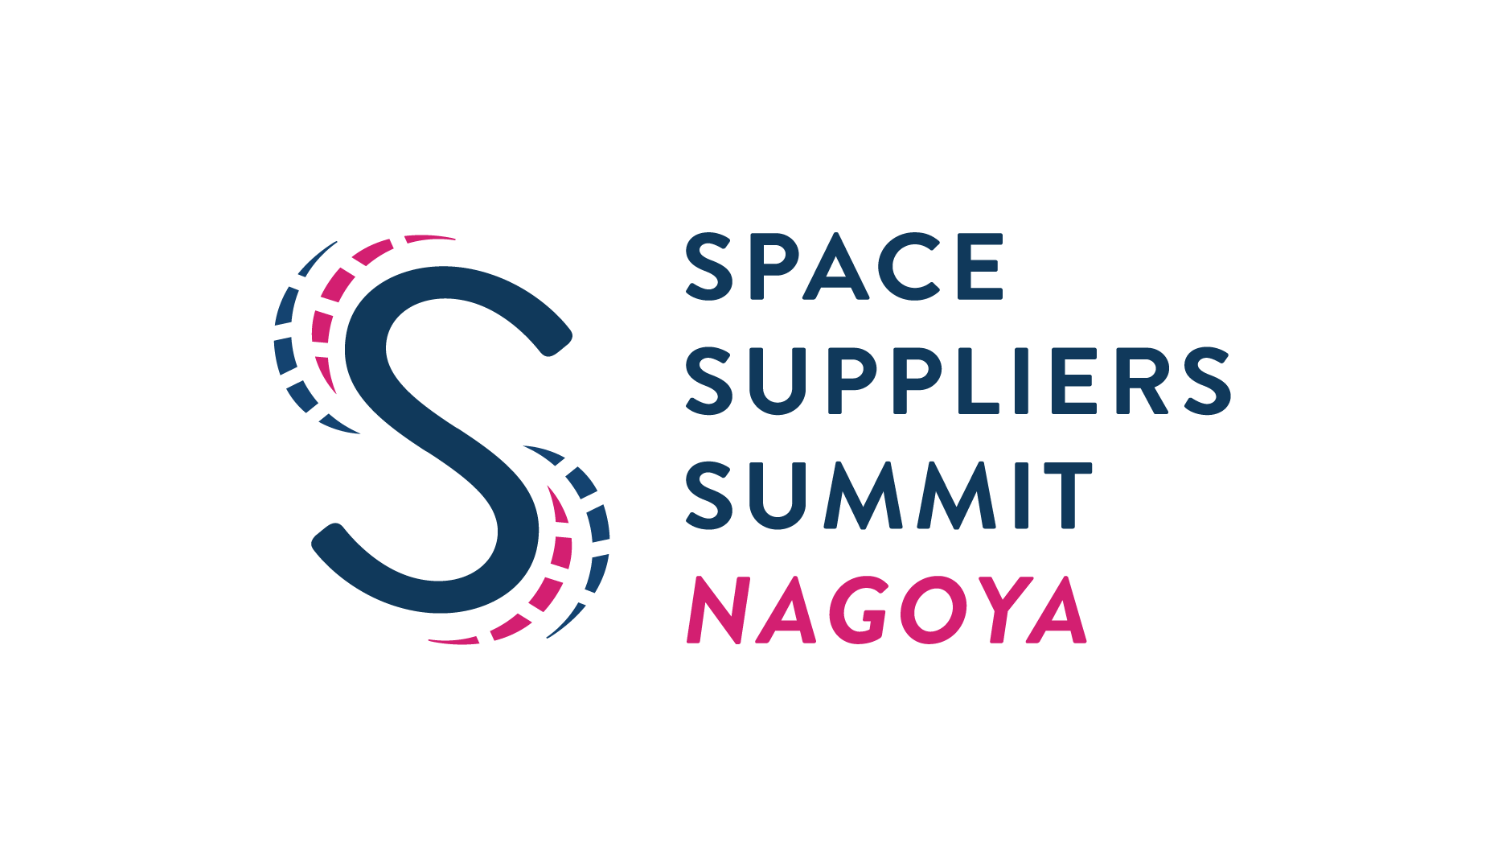 Space Suppliers Summit Nagoya